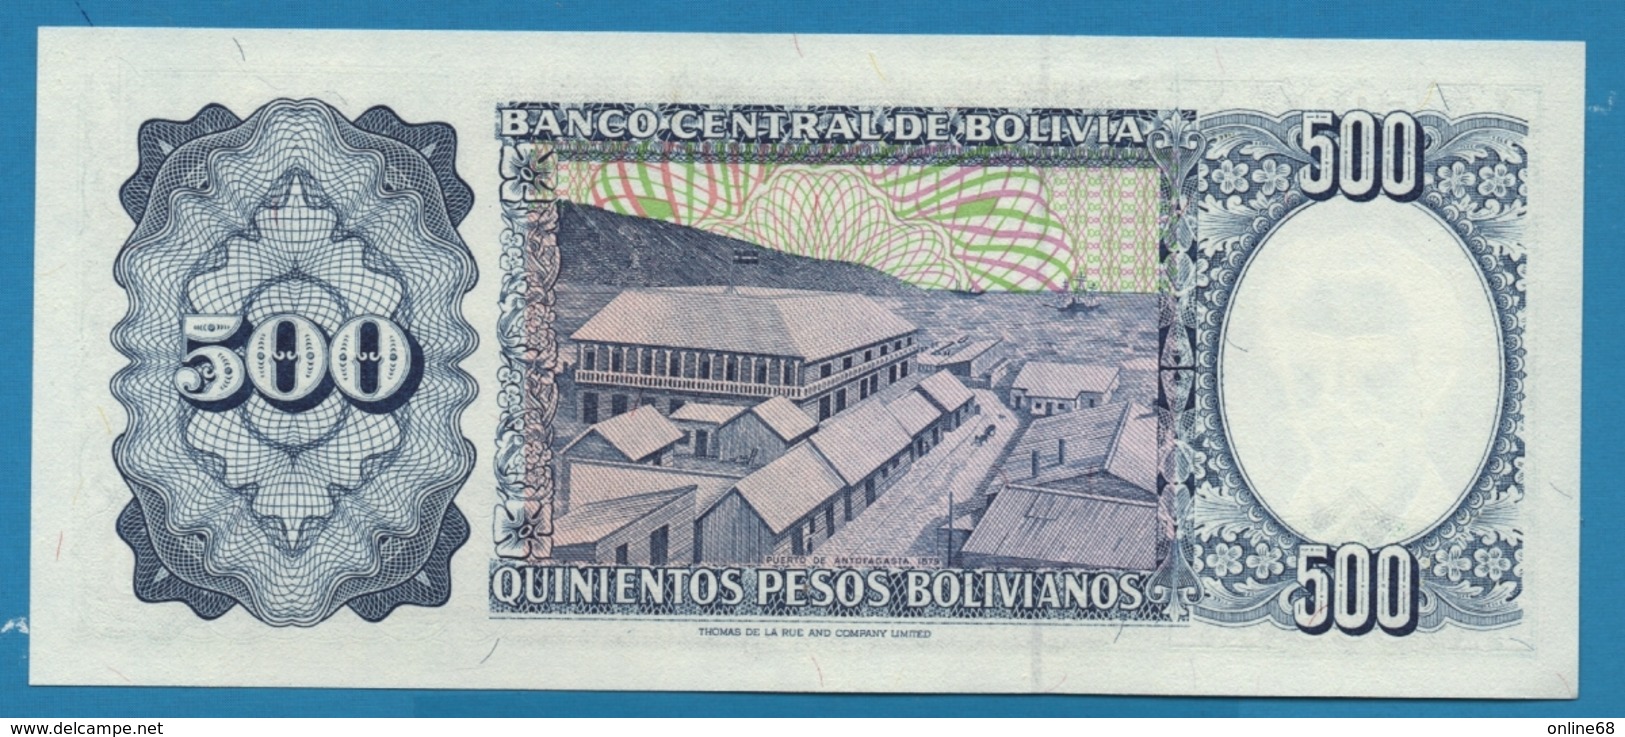 BOLIVIA 500 Pesos Bolivanos	01.06.81	Serial C  # 021755576  P# 166 - Bolivia